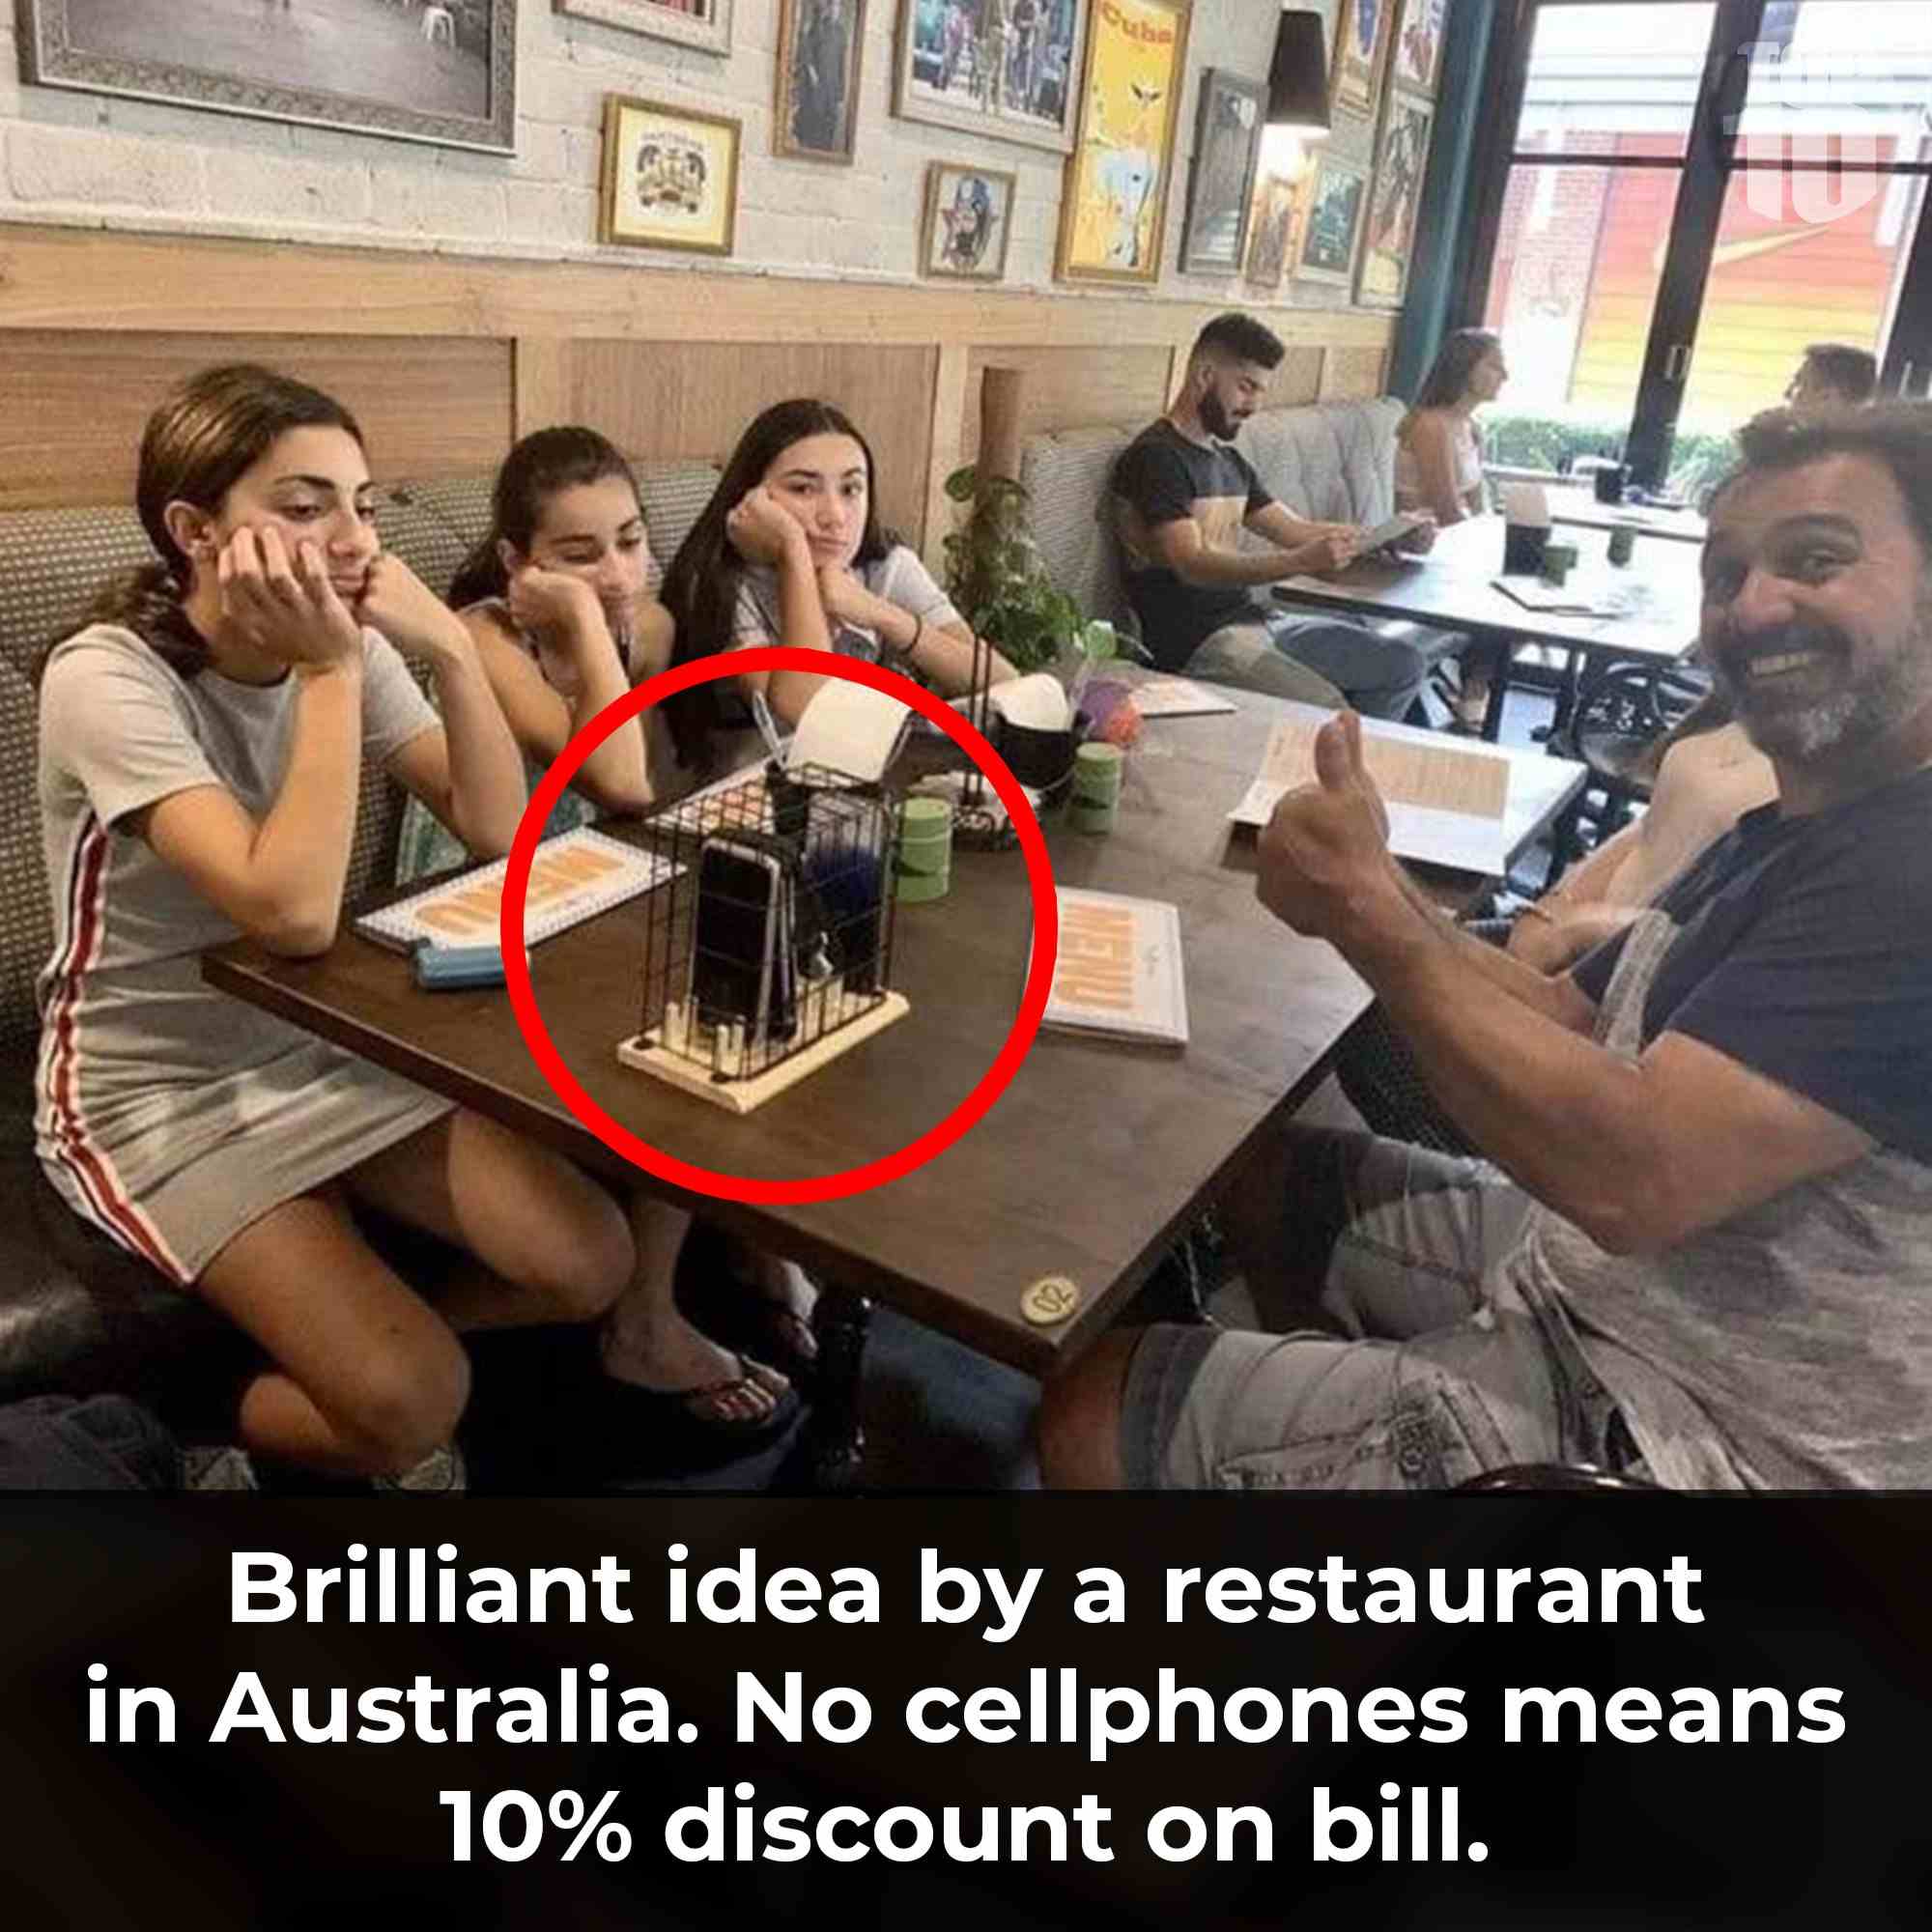 Brilliant idea by a restaurant in Australia